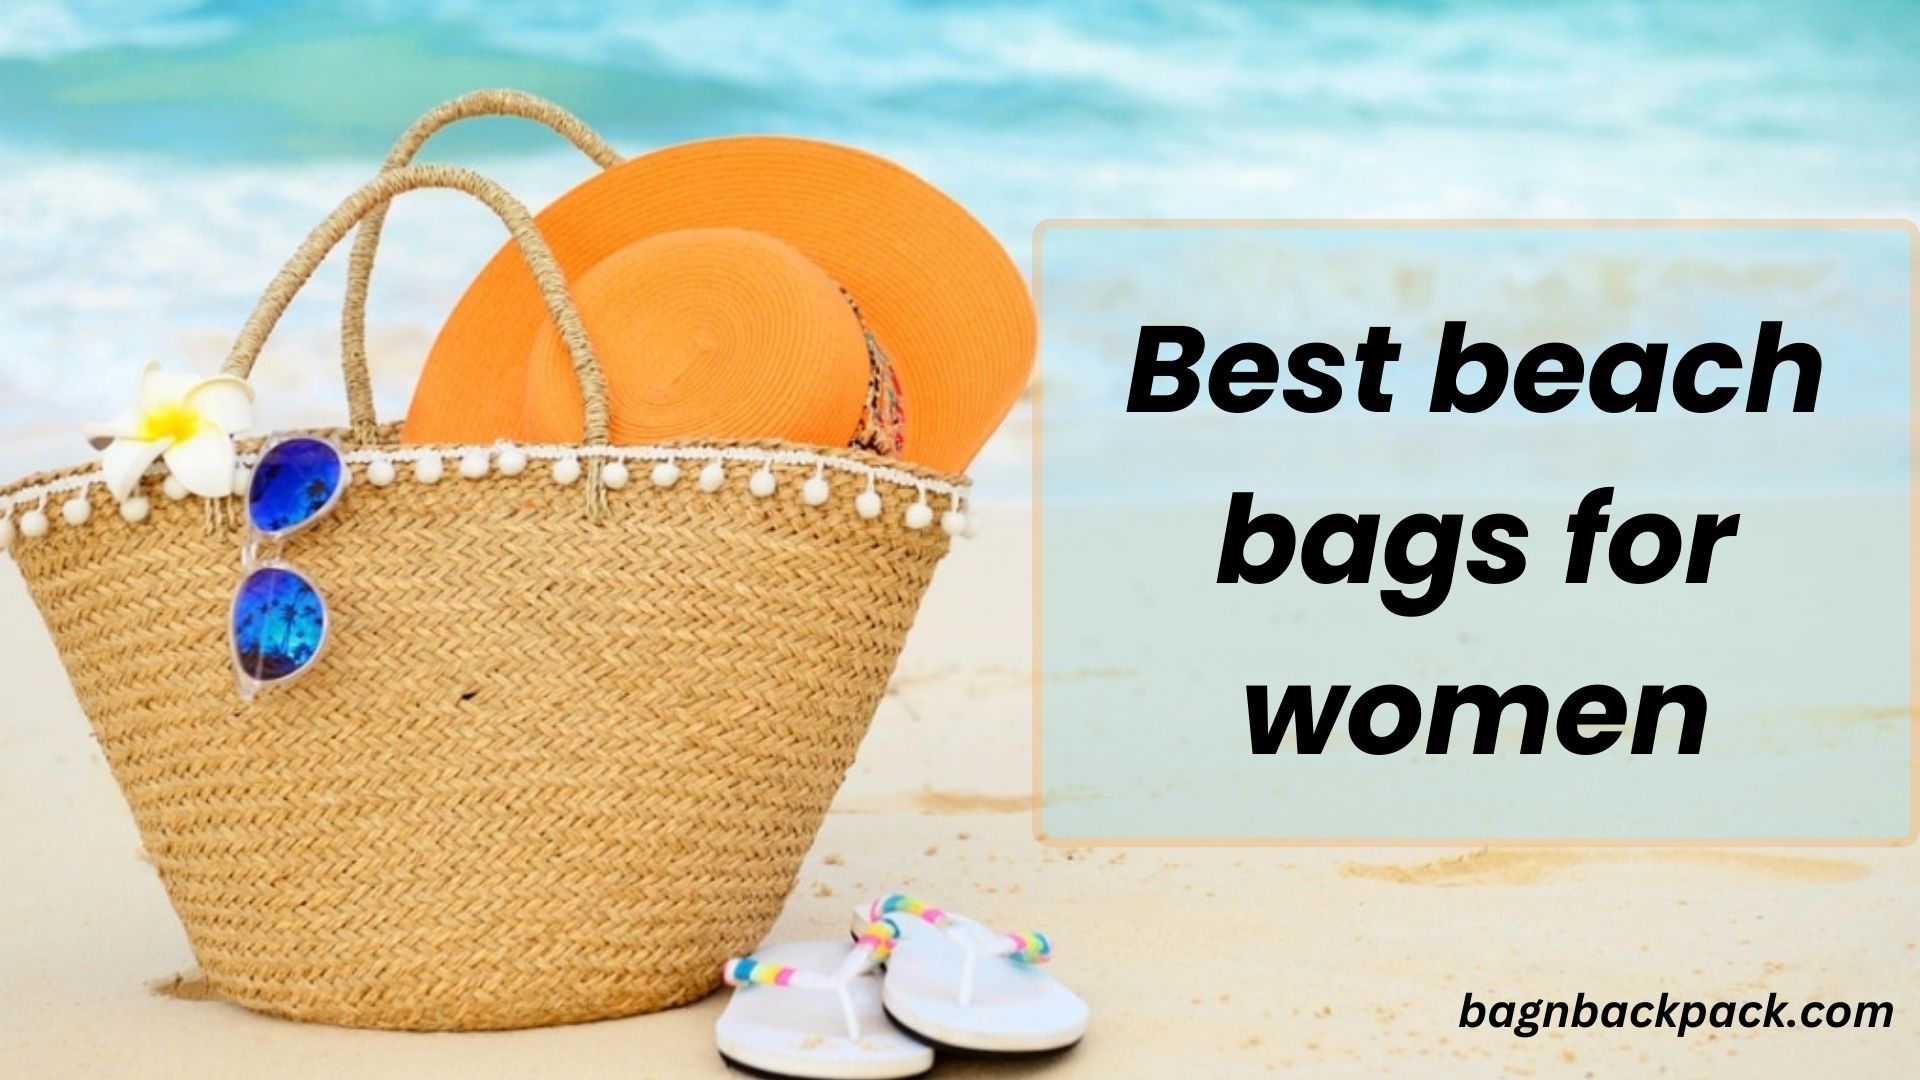 Best beach bags for women